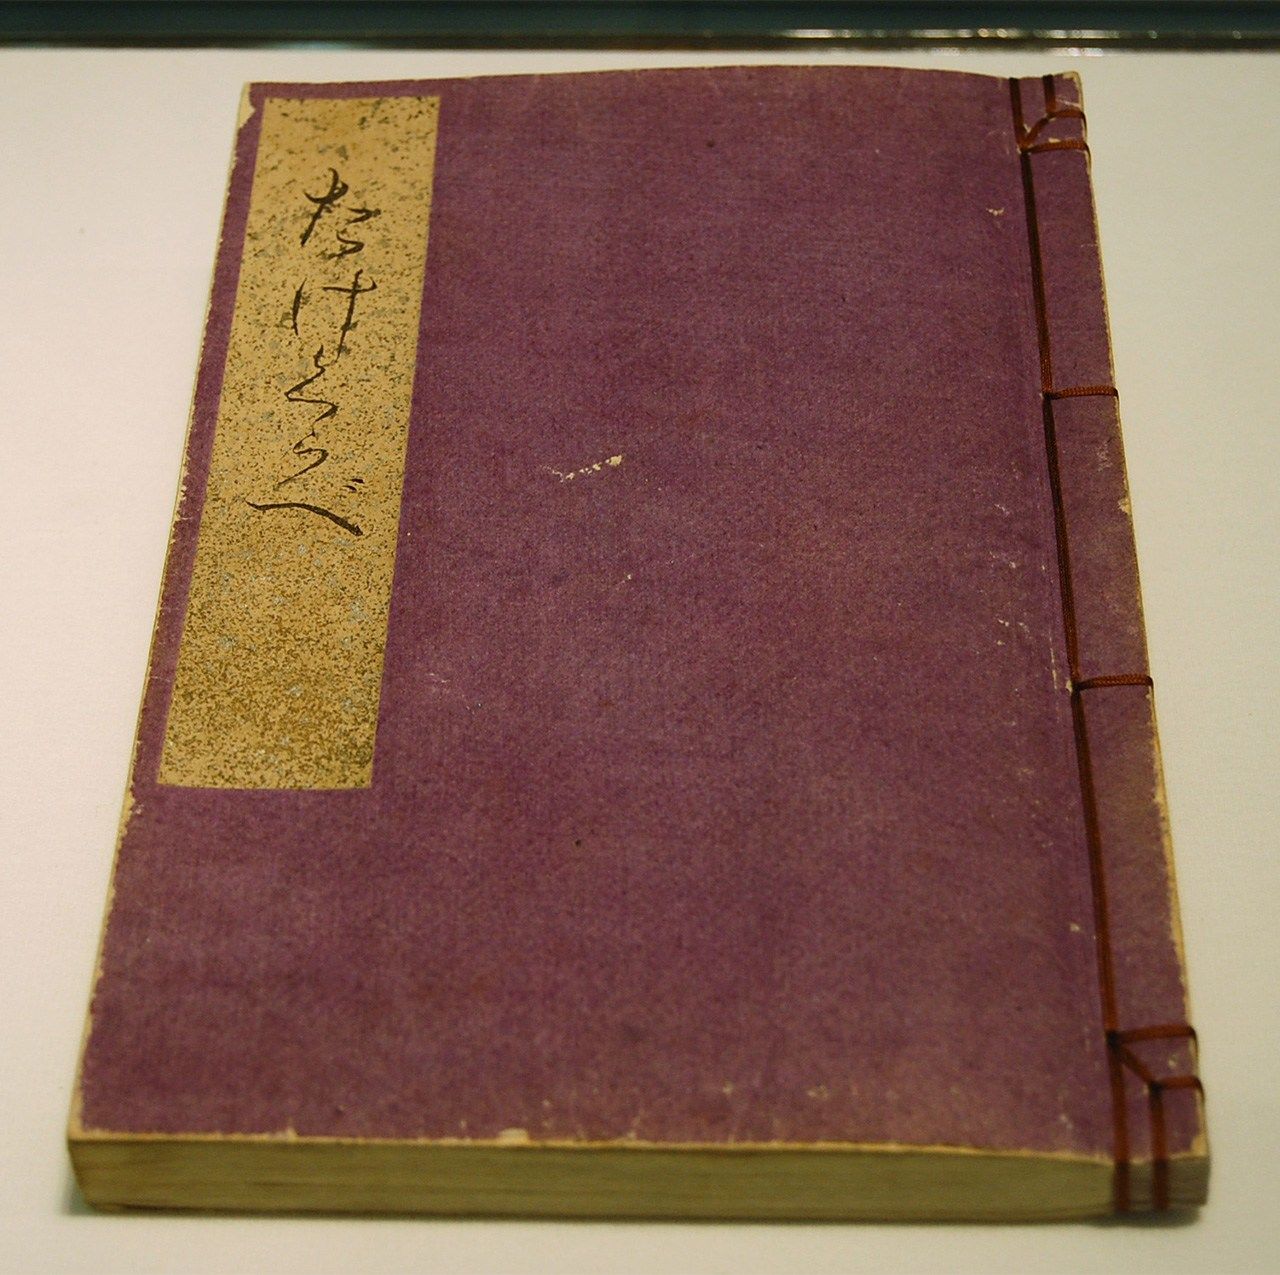 Le manuscrit de Higuchi Ichiyô intitulé Qui est le plus grand ? s’est vendu pour 21 millions de yens (150 000 euros) lors d’une vente aux enchères en 2019. (© Jiji)